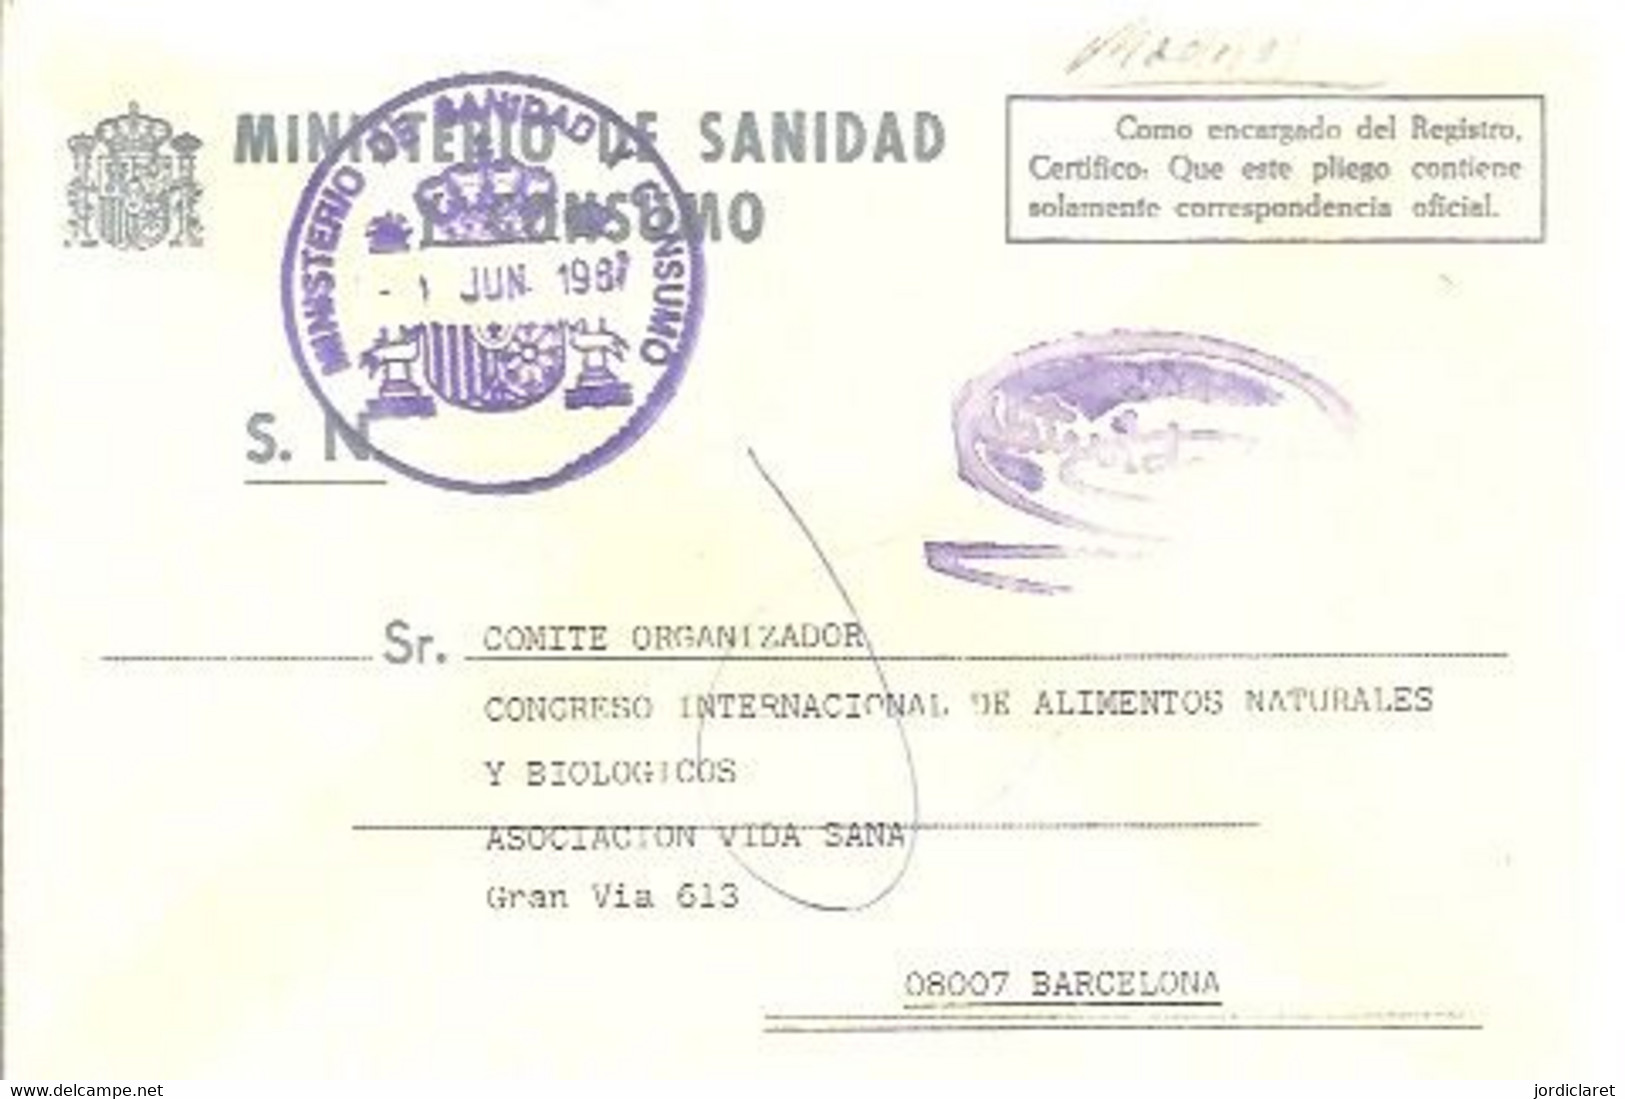 MINISTERIO DE SANIDAD Y CONSUMO 1987 - Postage Free